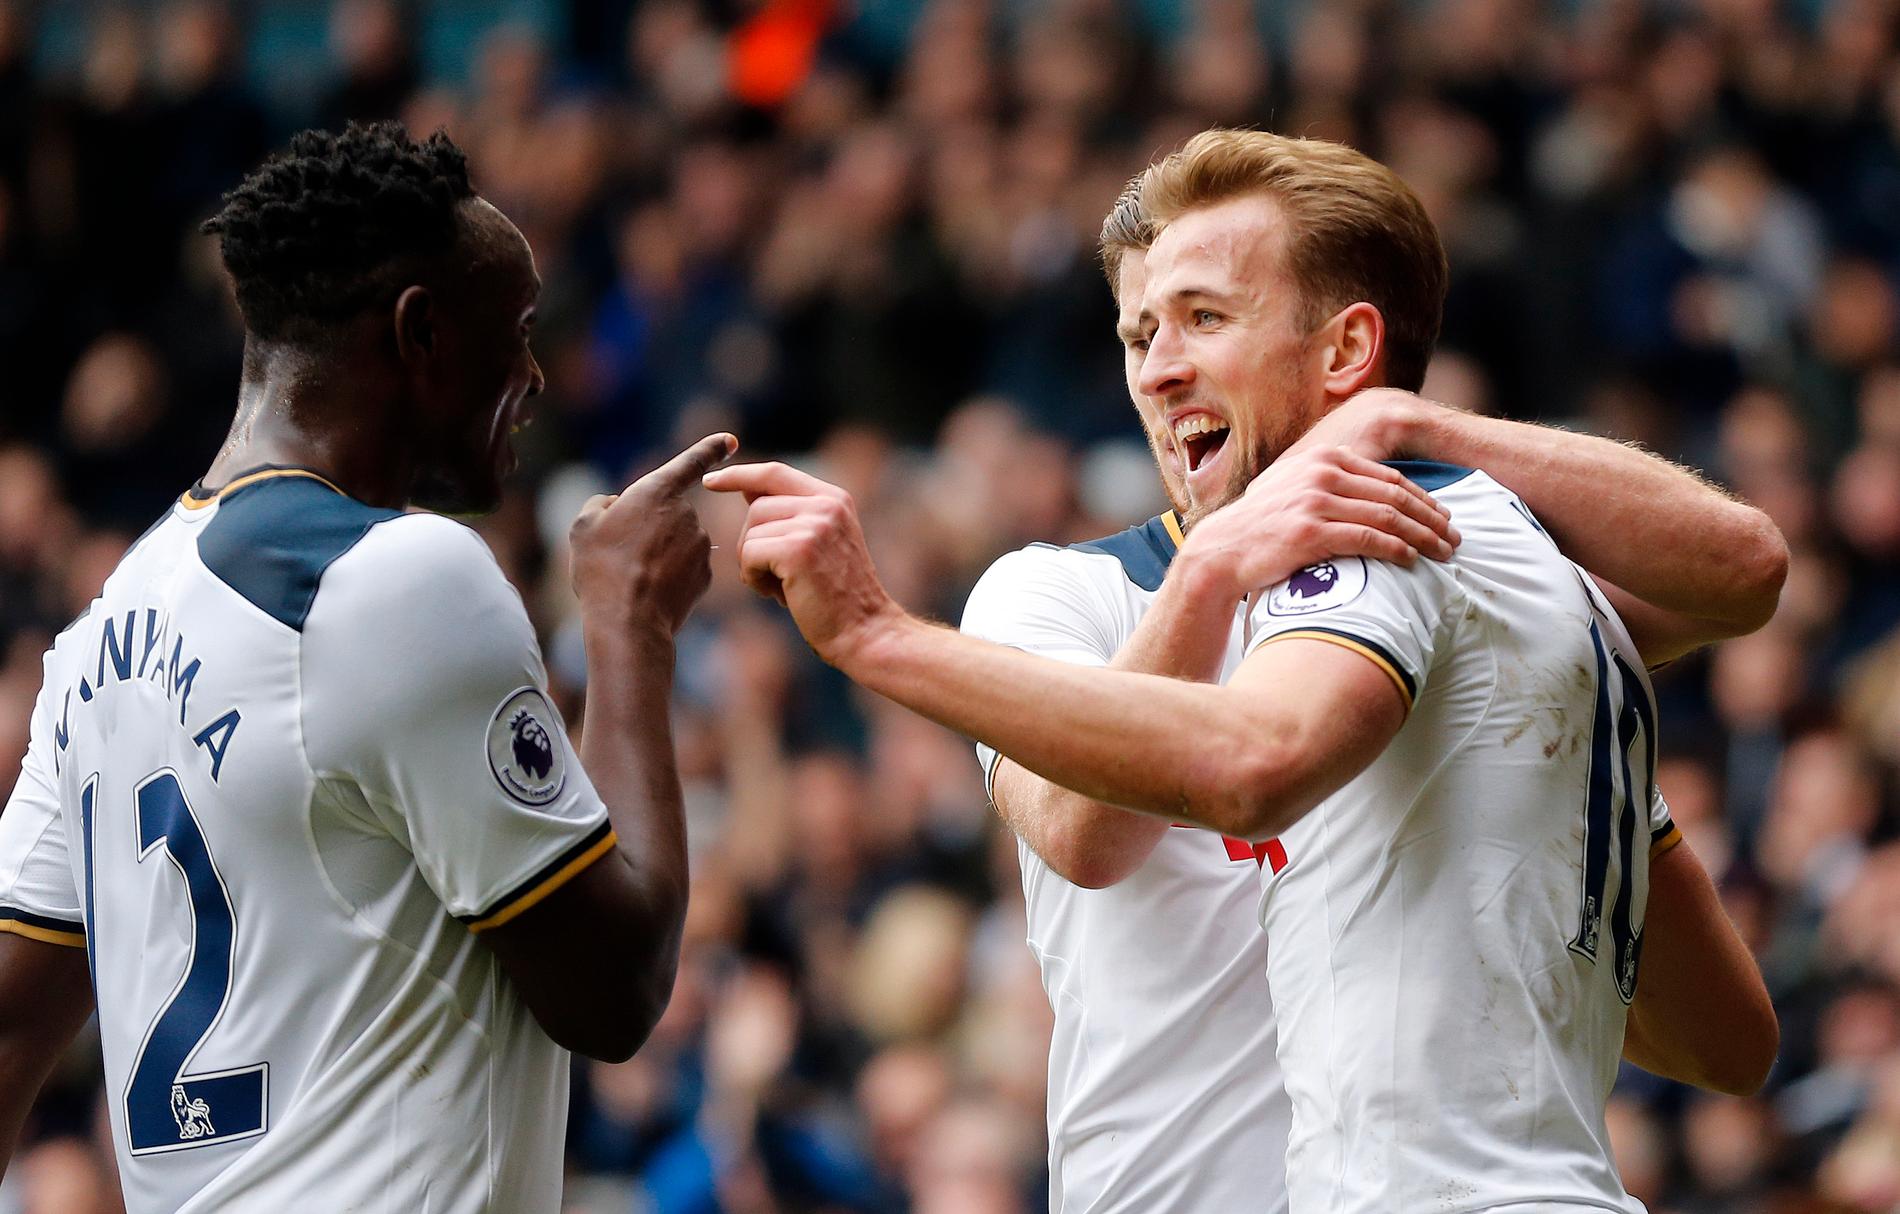 Kane med ytterligare två mål i Tottenhams vinst över Everton.